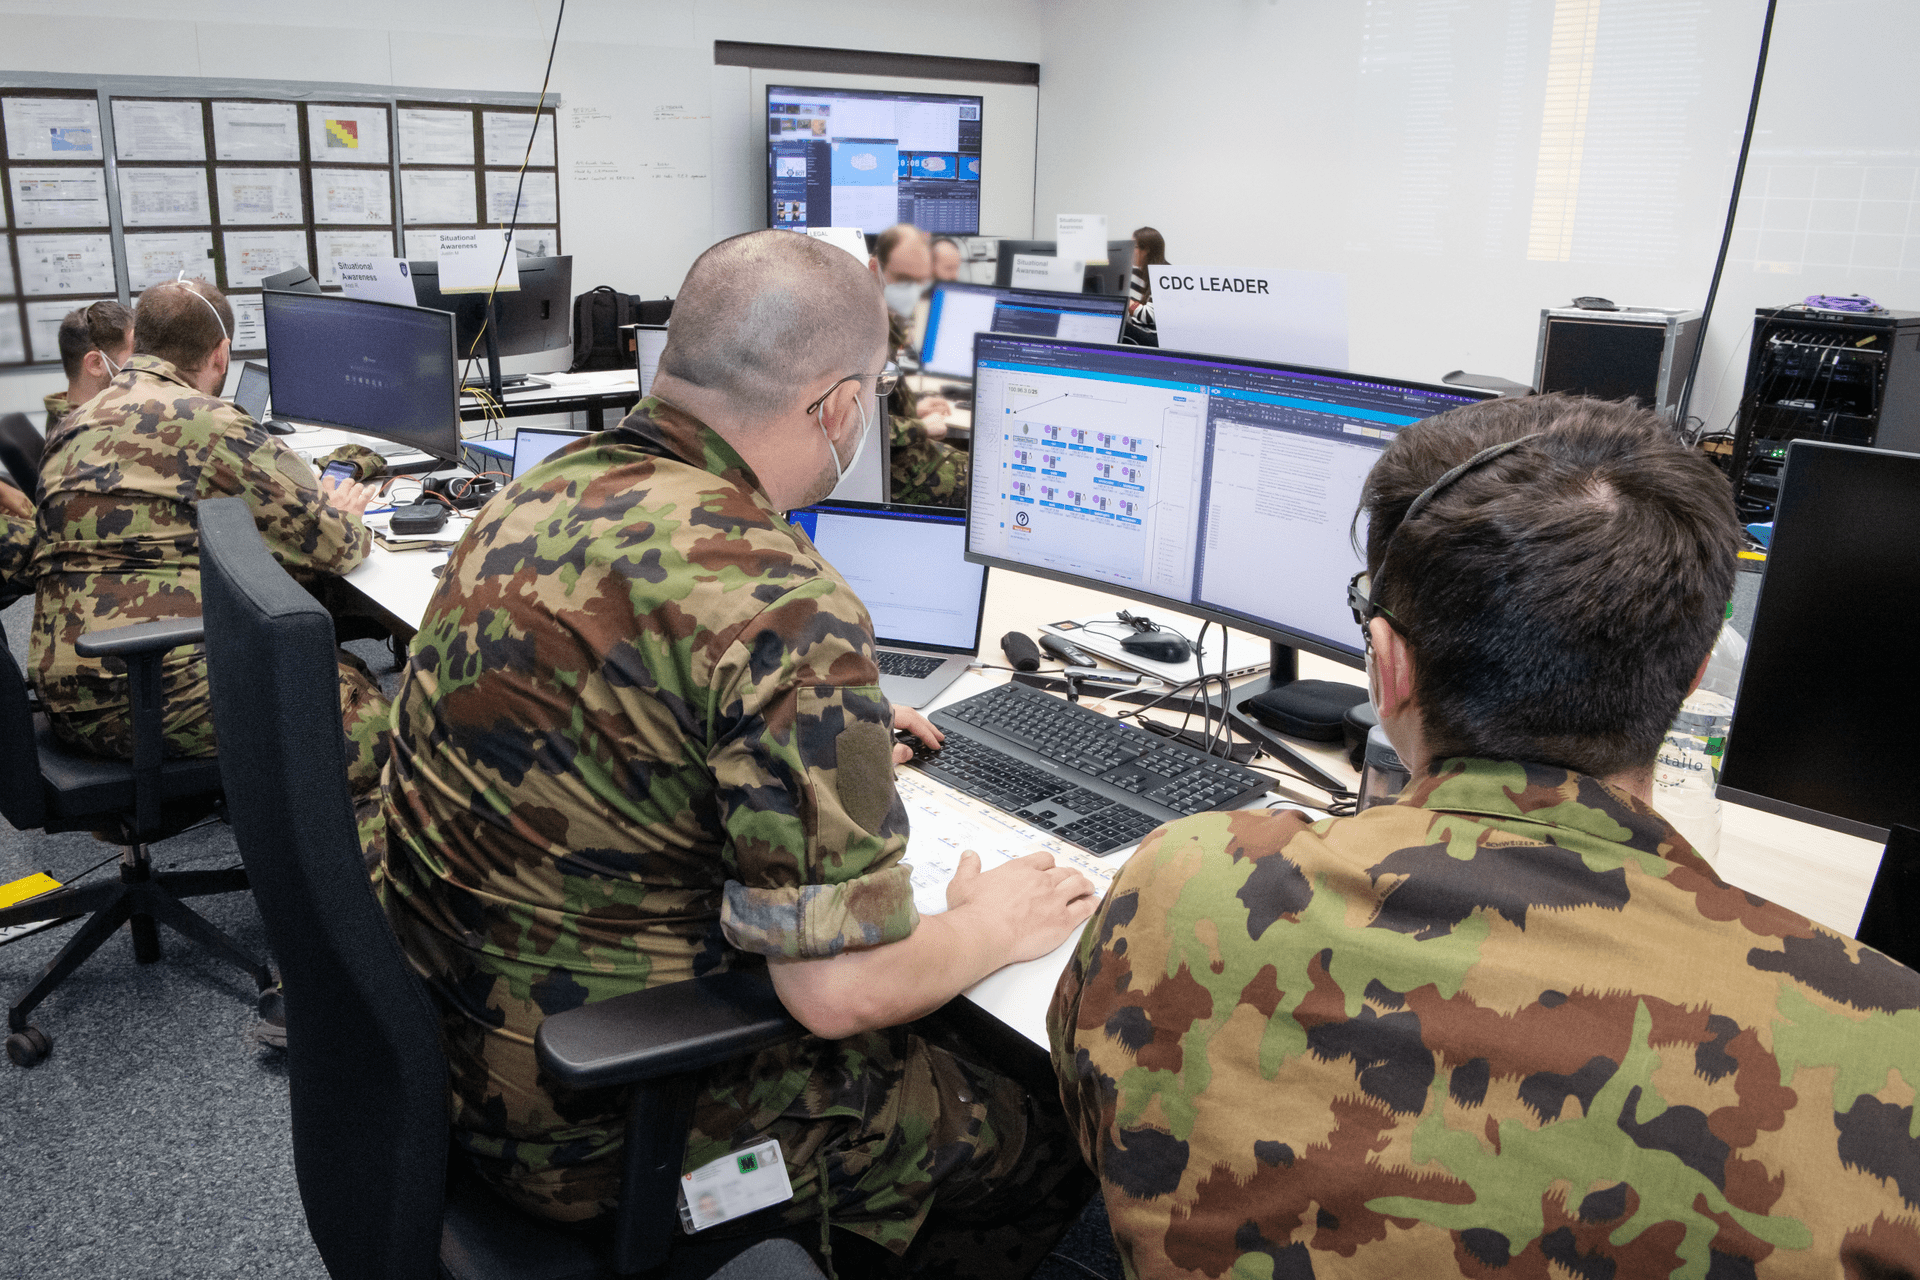 ทหารประมาณสองโหลจากกองพัน "cyber 42" ผู้เข้าร่วมหลักสูตรการฝึกอบรมของ Schweizer Armee และสมาชิกของกองทหารรักษาการณ์จากเสนาธิการทหารเฉพาะทาง ได้เตรียมความพร้อมอย่างเข้มข้นร่วมกับผู้เชี่ยวชาญจากฐานสนับสนุนกองบัญชาการกองทัพบก (BAC) ) สำหรับสถานการณ์การฝึกซ้อมระหว่างประเทศของ Locked Shields ซึ่งจัดโดยศูนย์ความเป็นเลิศด้านการป้องกันไซเบอร์แบบร่วมมือในทาลลินน์